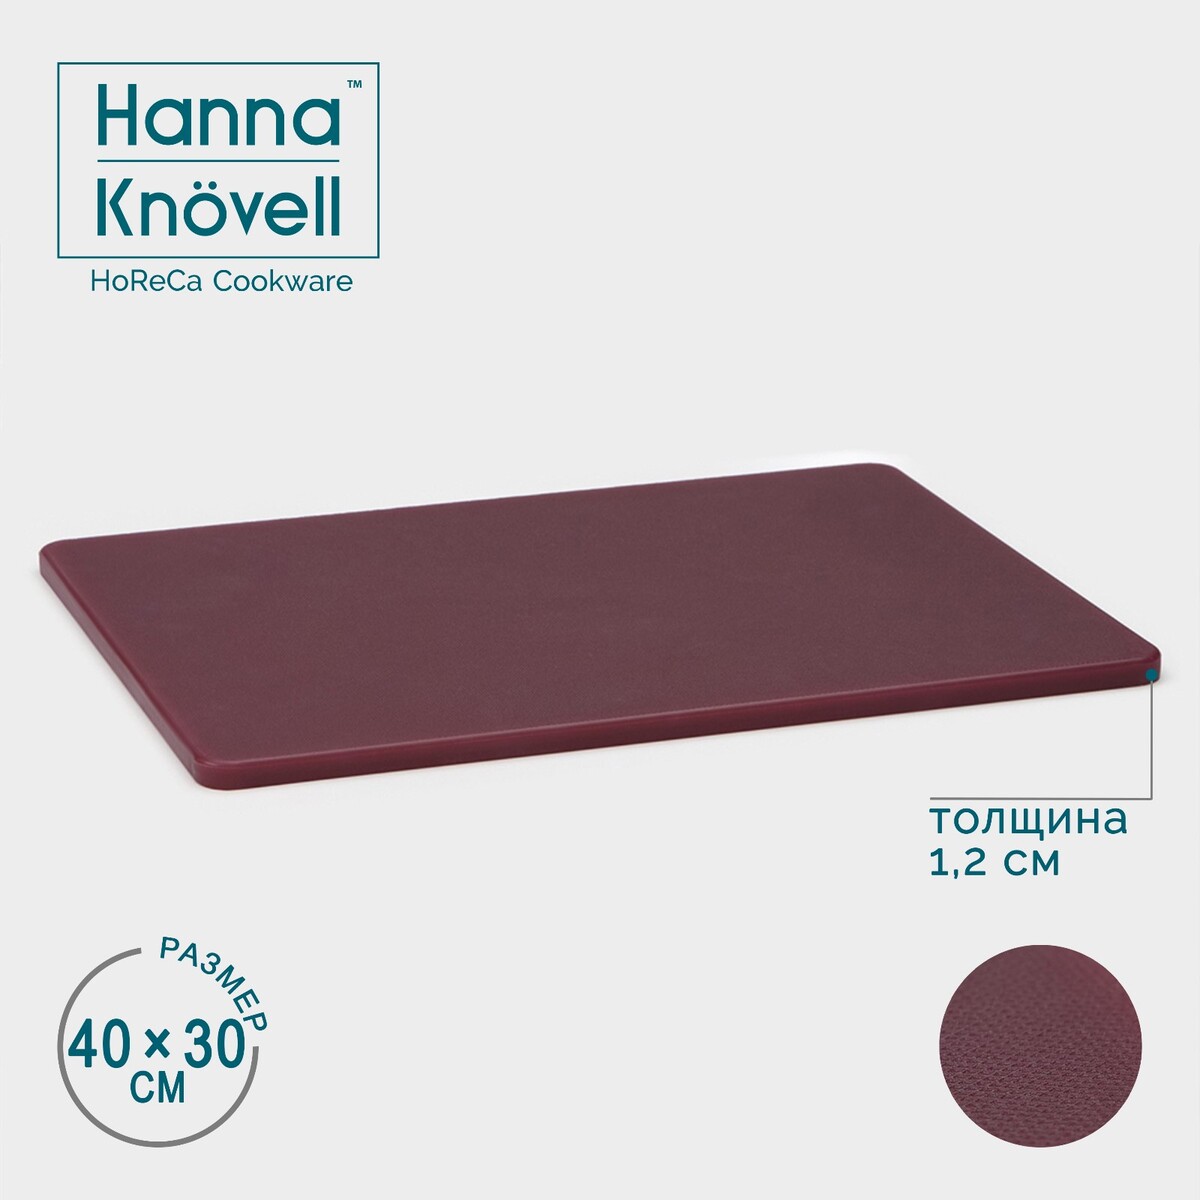 Доска профессиональная разделочная hanna knövell, 40×30×1,2 см, цвет коричневый